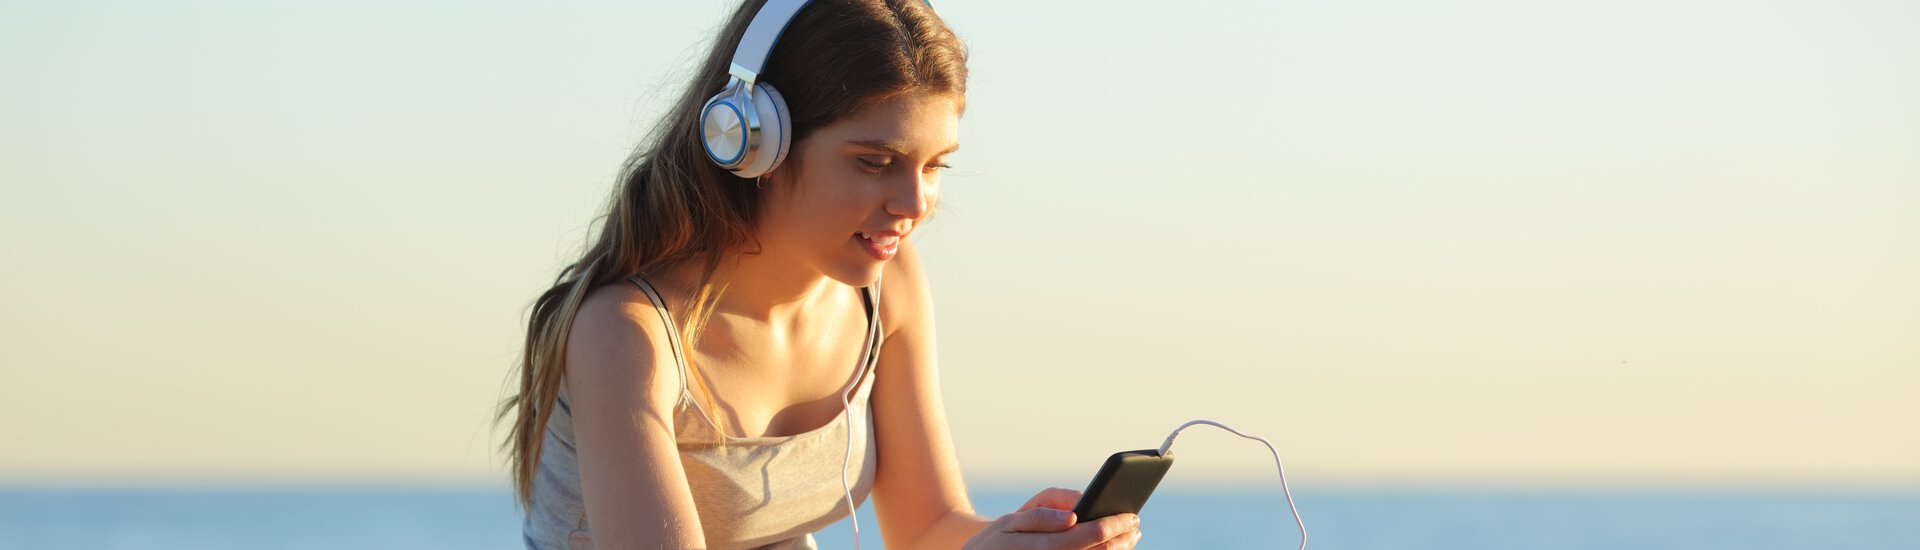 Mädchen mit Headphones schaut schaut entspannt aufs Handy und sitzt am Meer